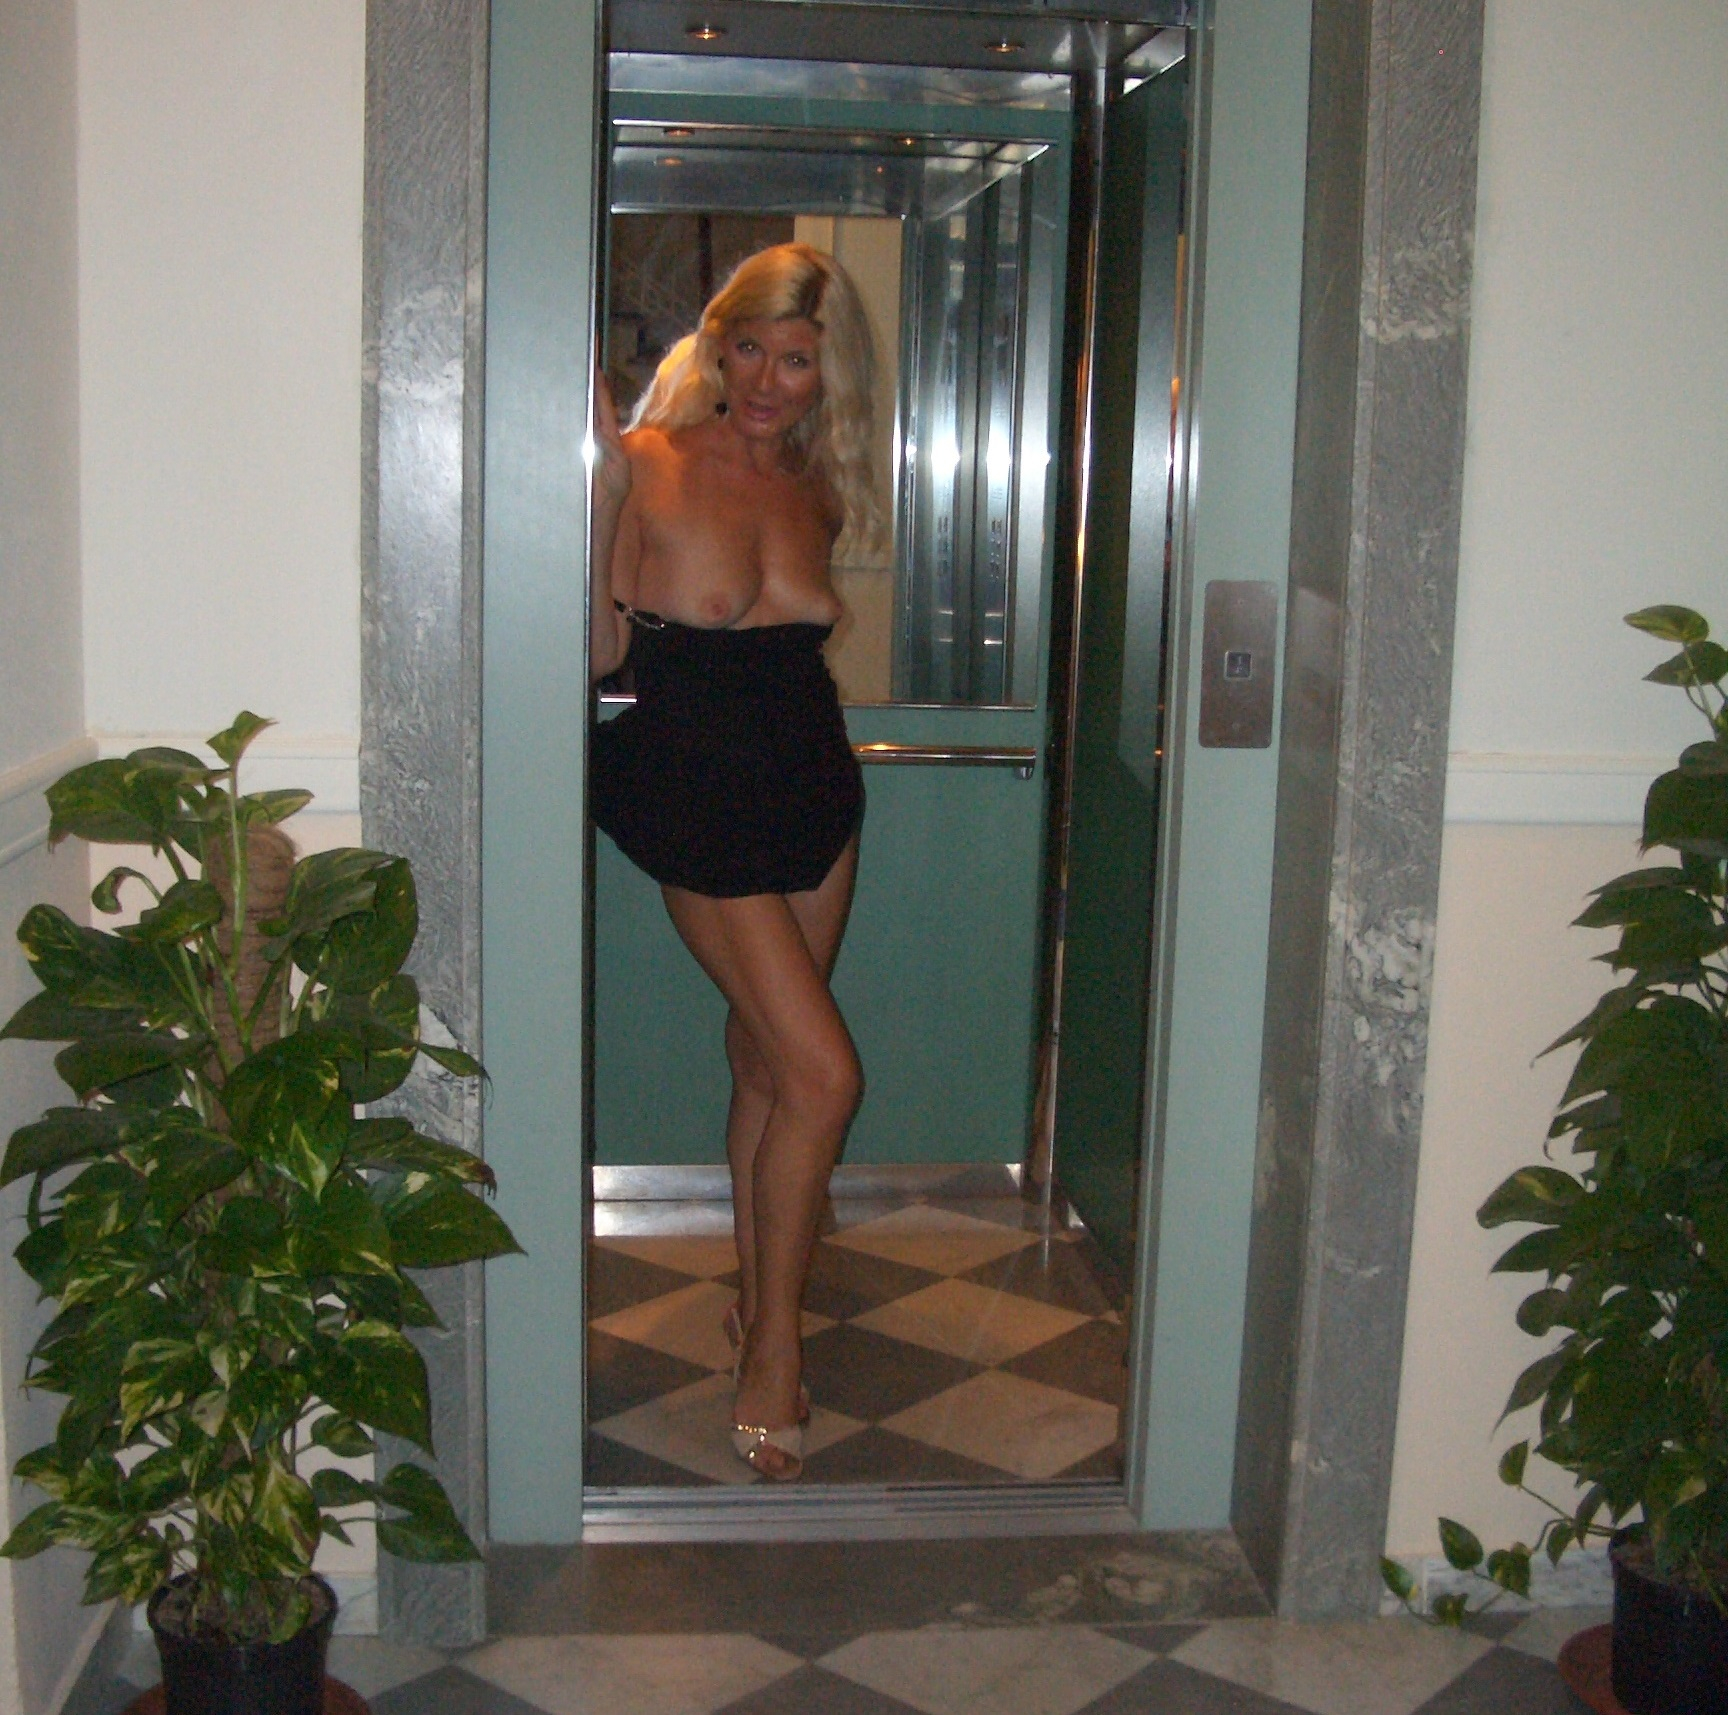 my public nudity in a hotel - N